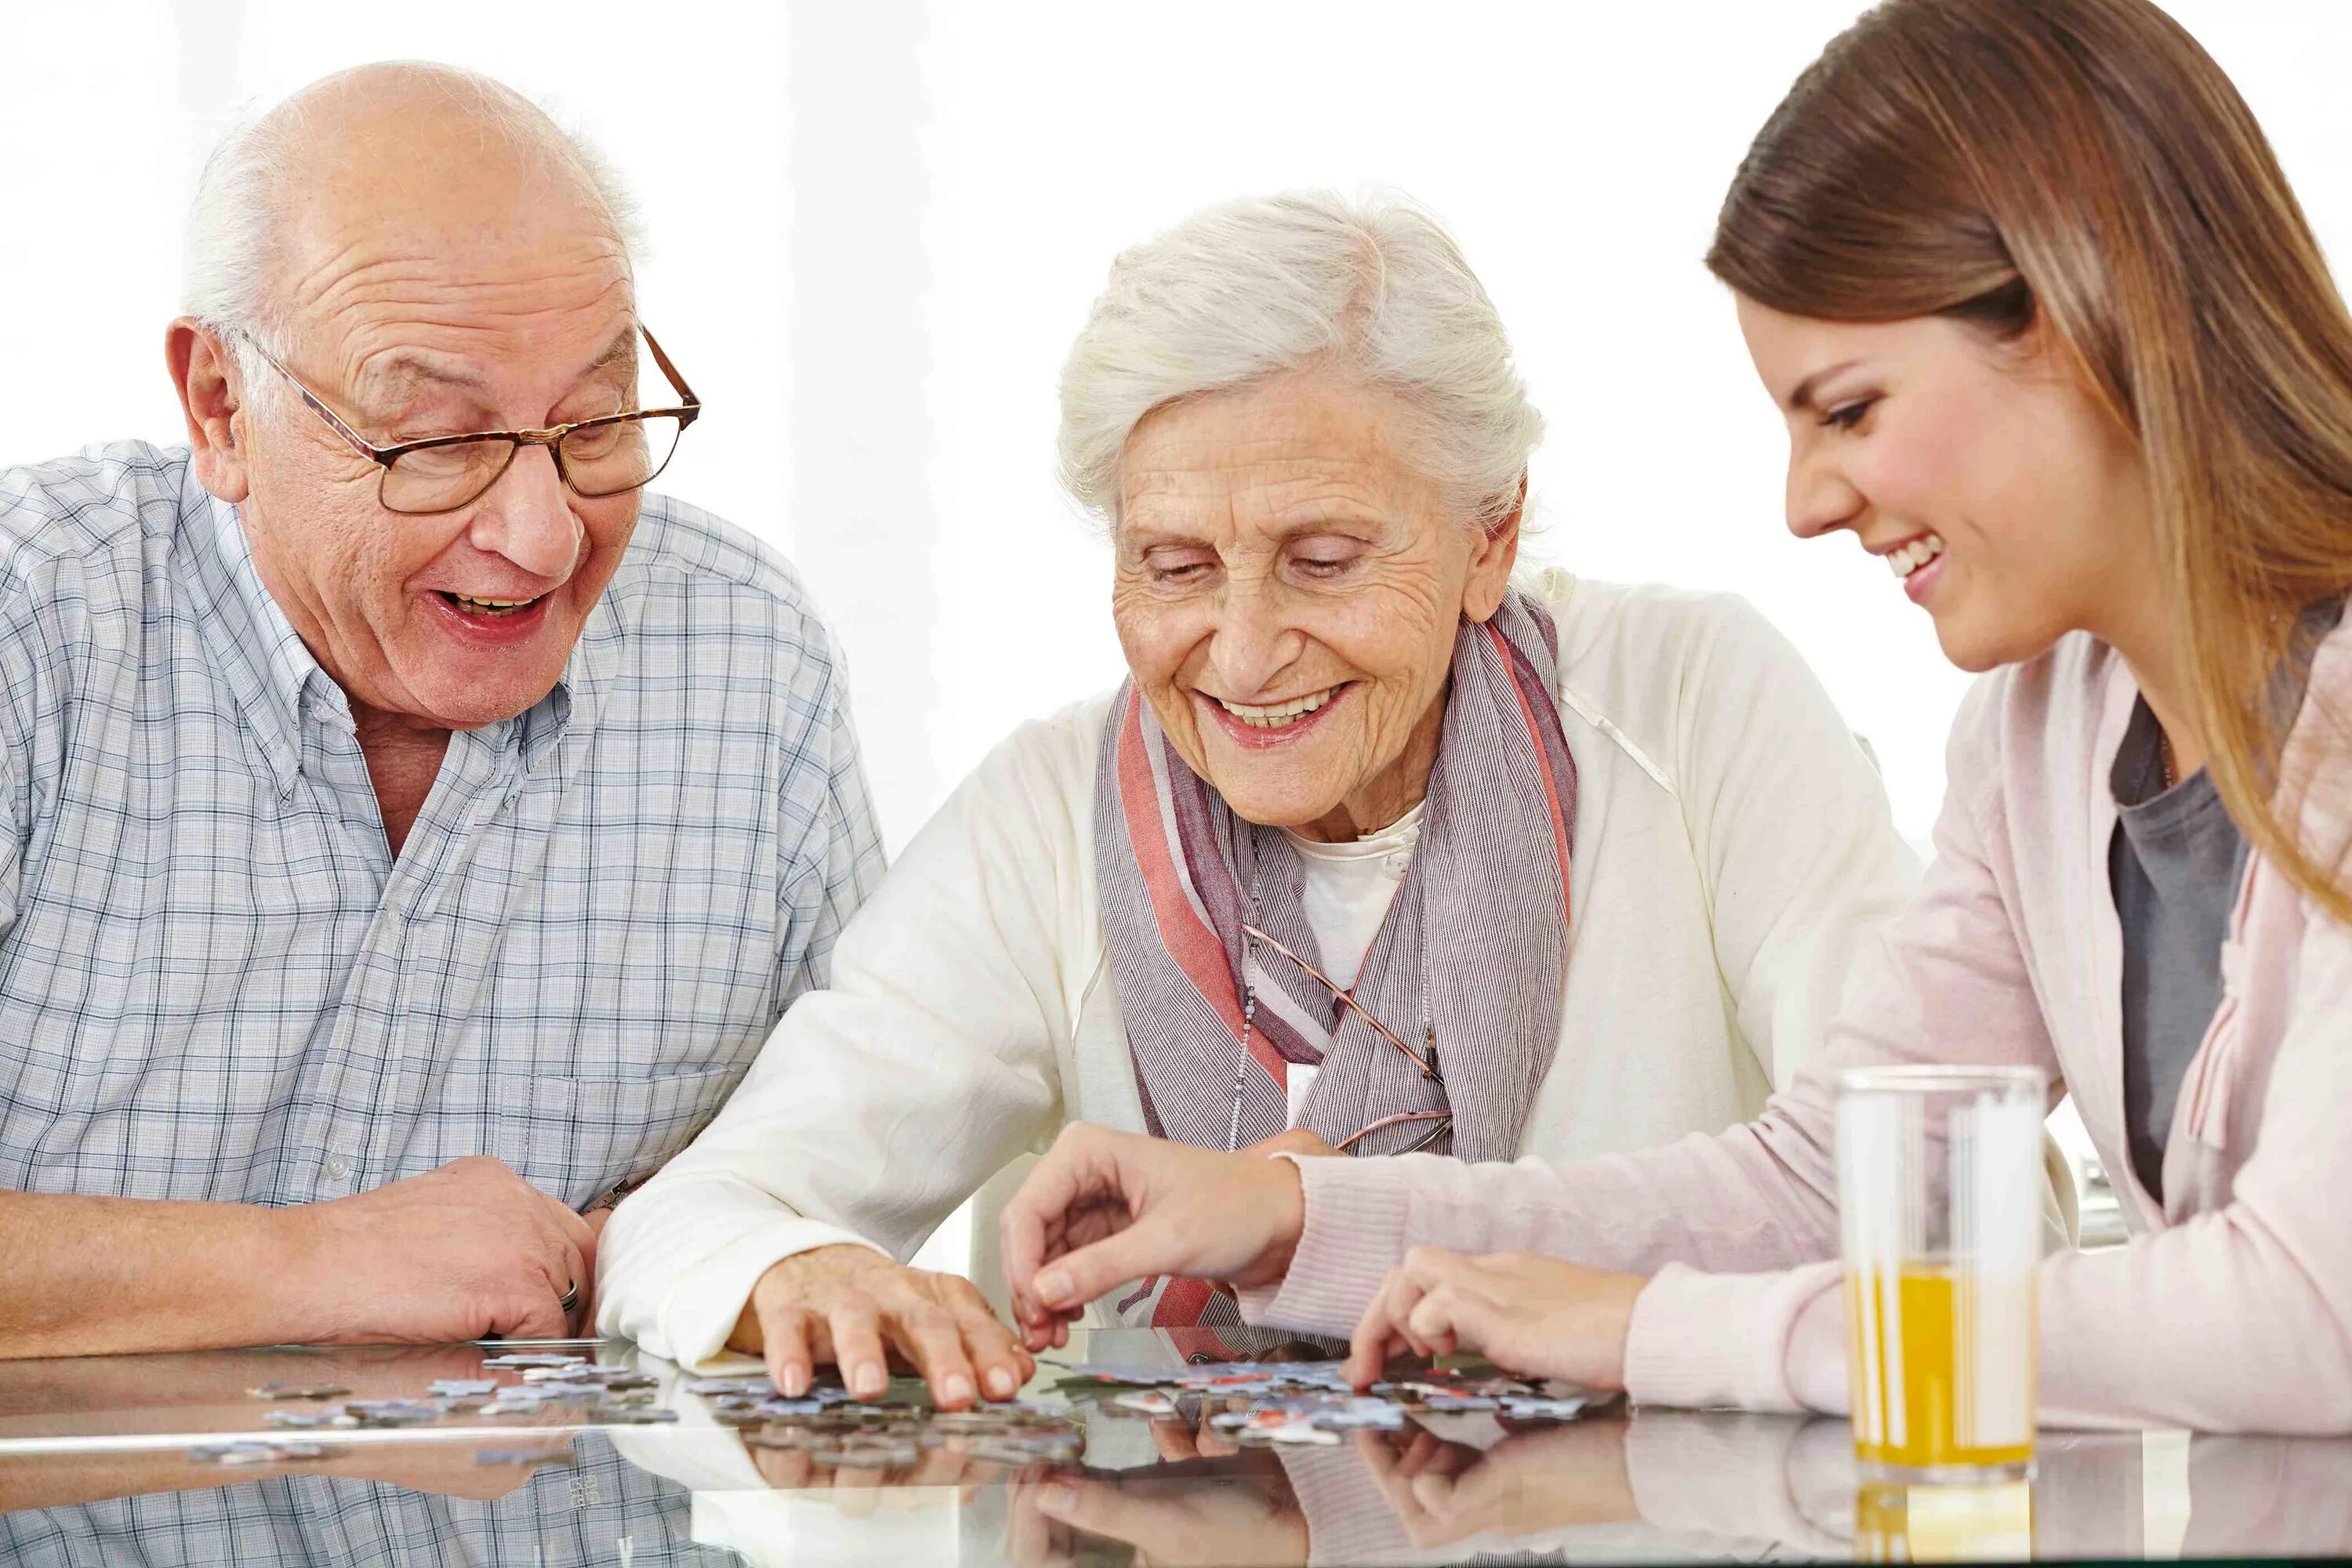 S s пожилые люди. Разговор с пожилым человеком. Разговорполжилых людей. Общение с пожилыми людьми. Пожилые люди.